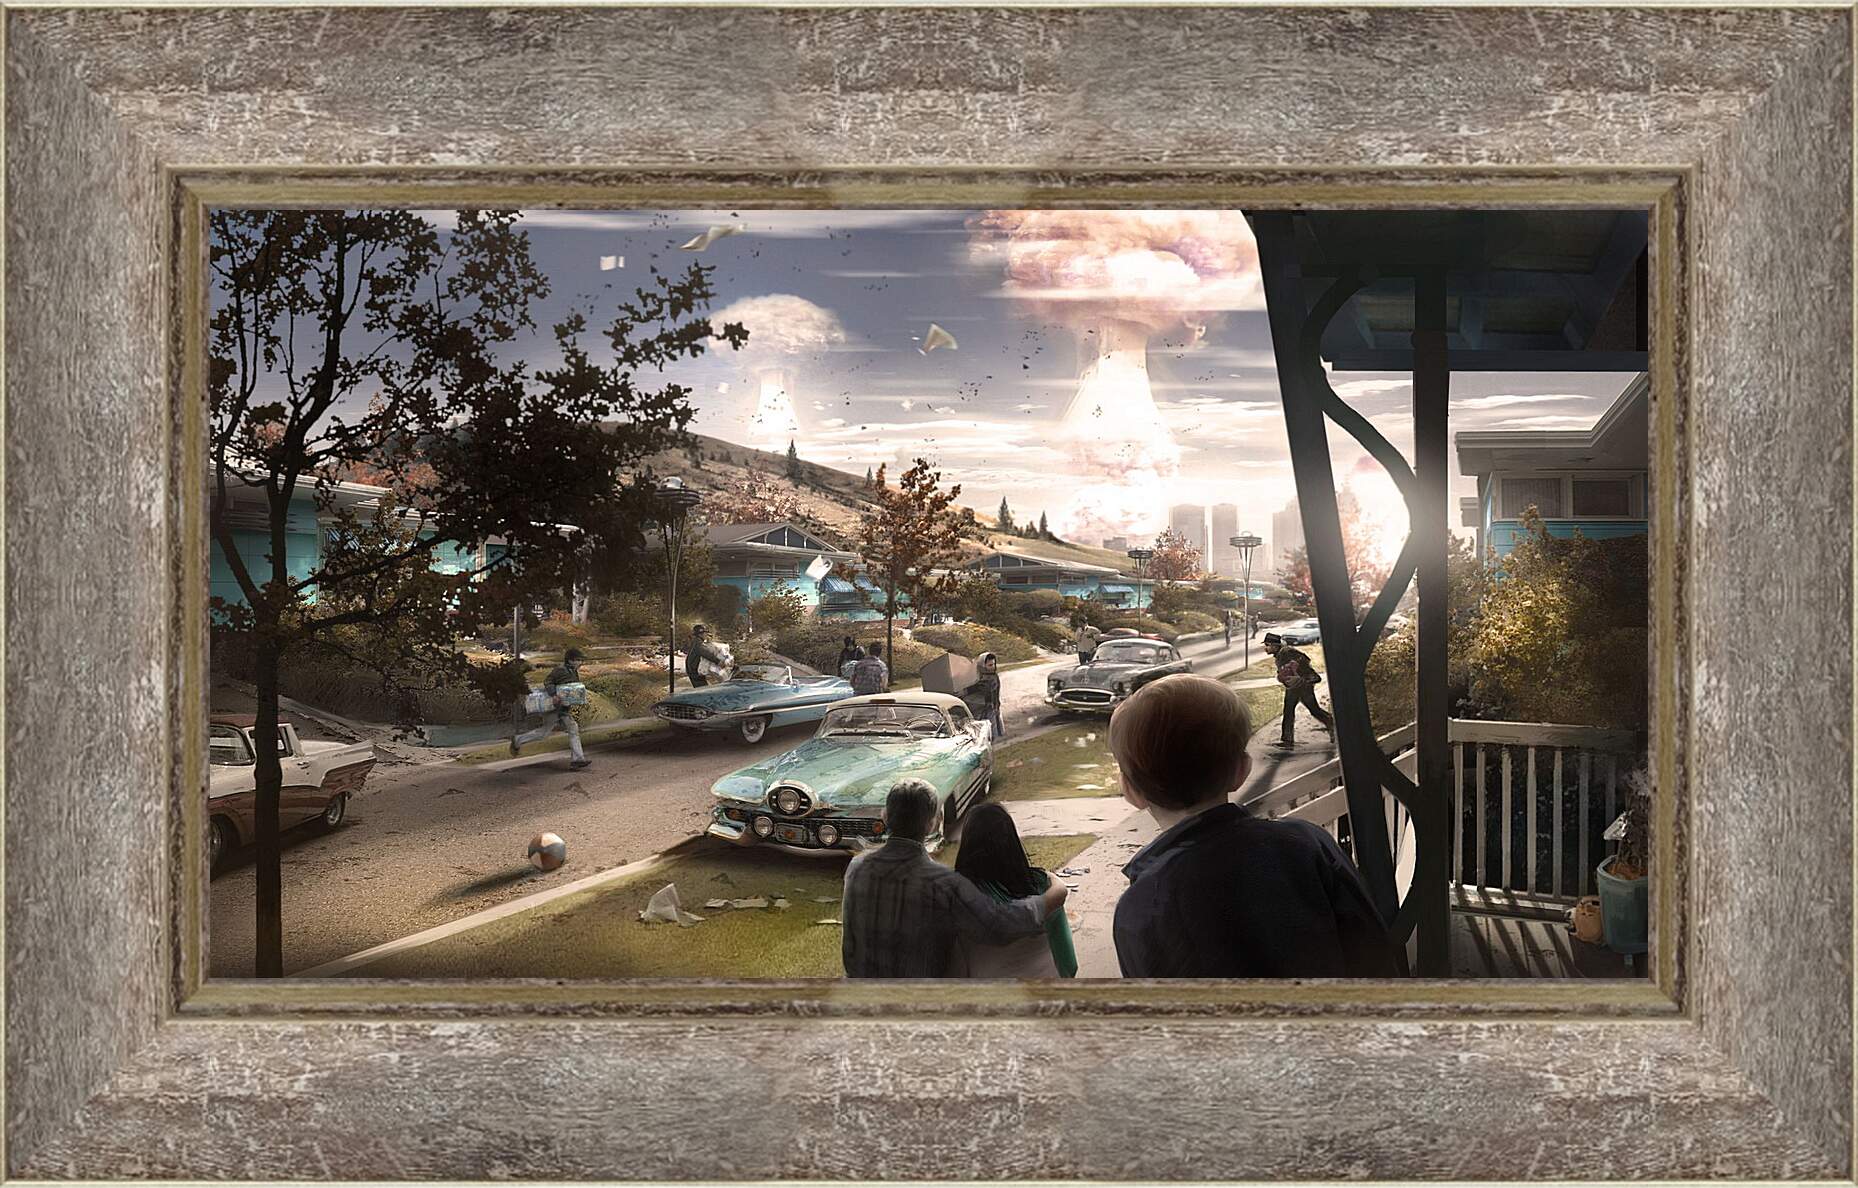 Картина в раме - Fallout 4
